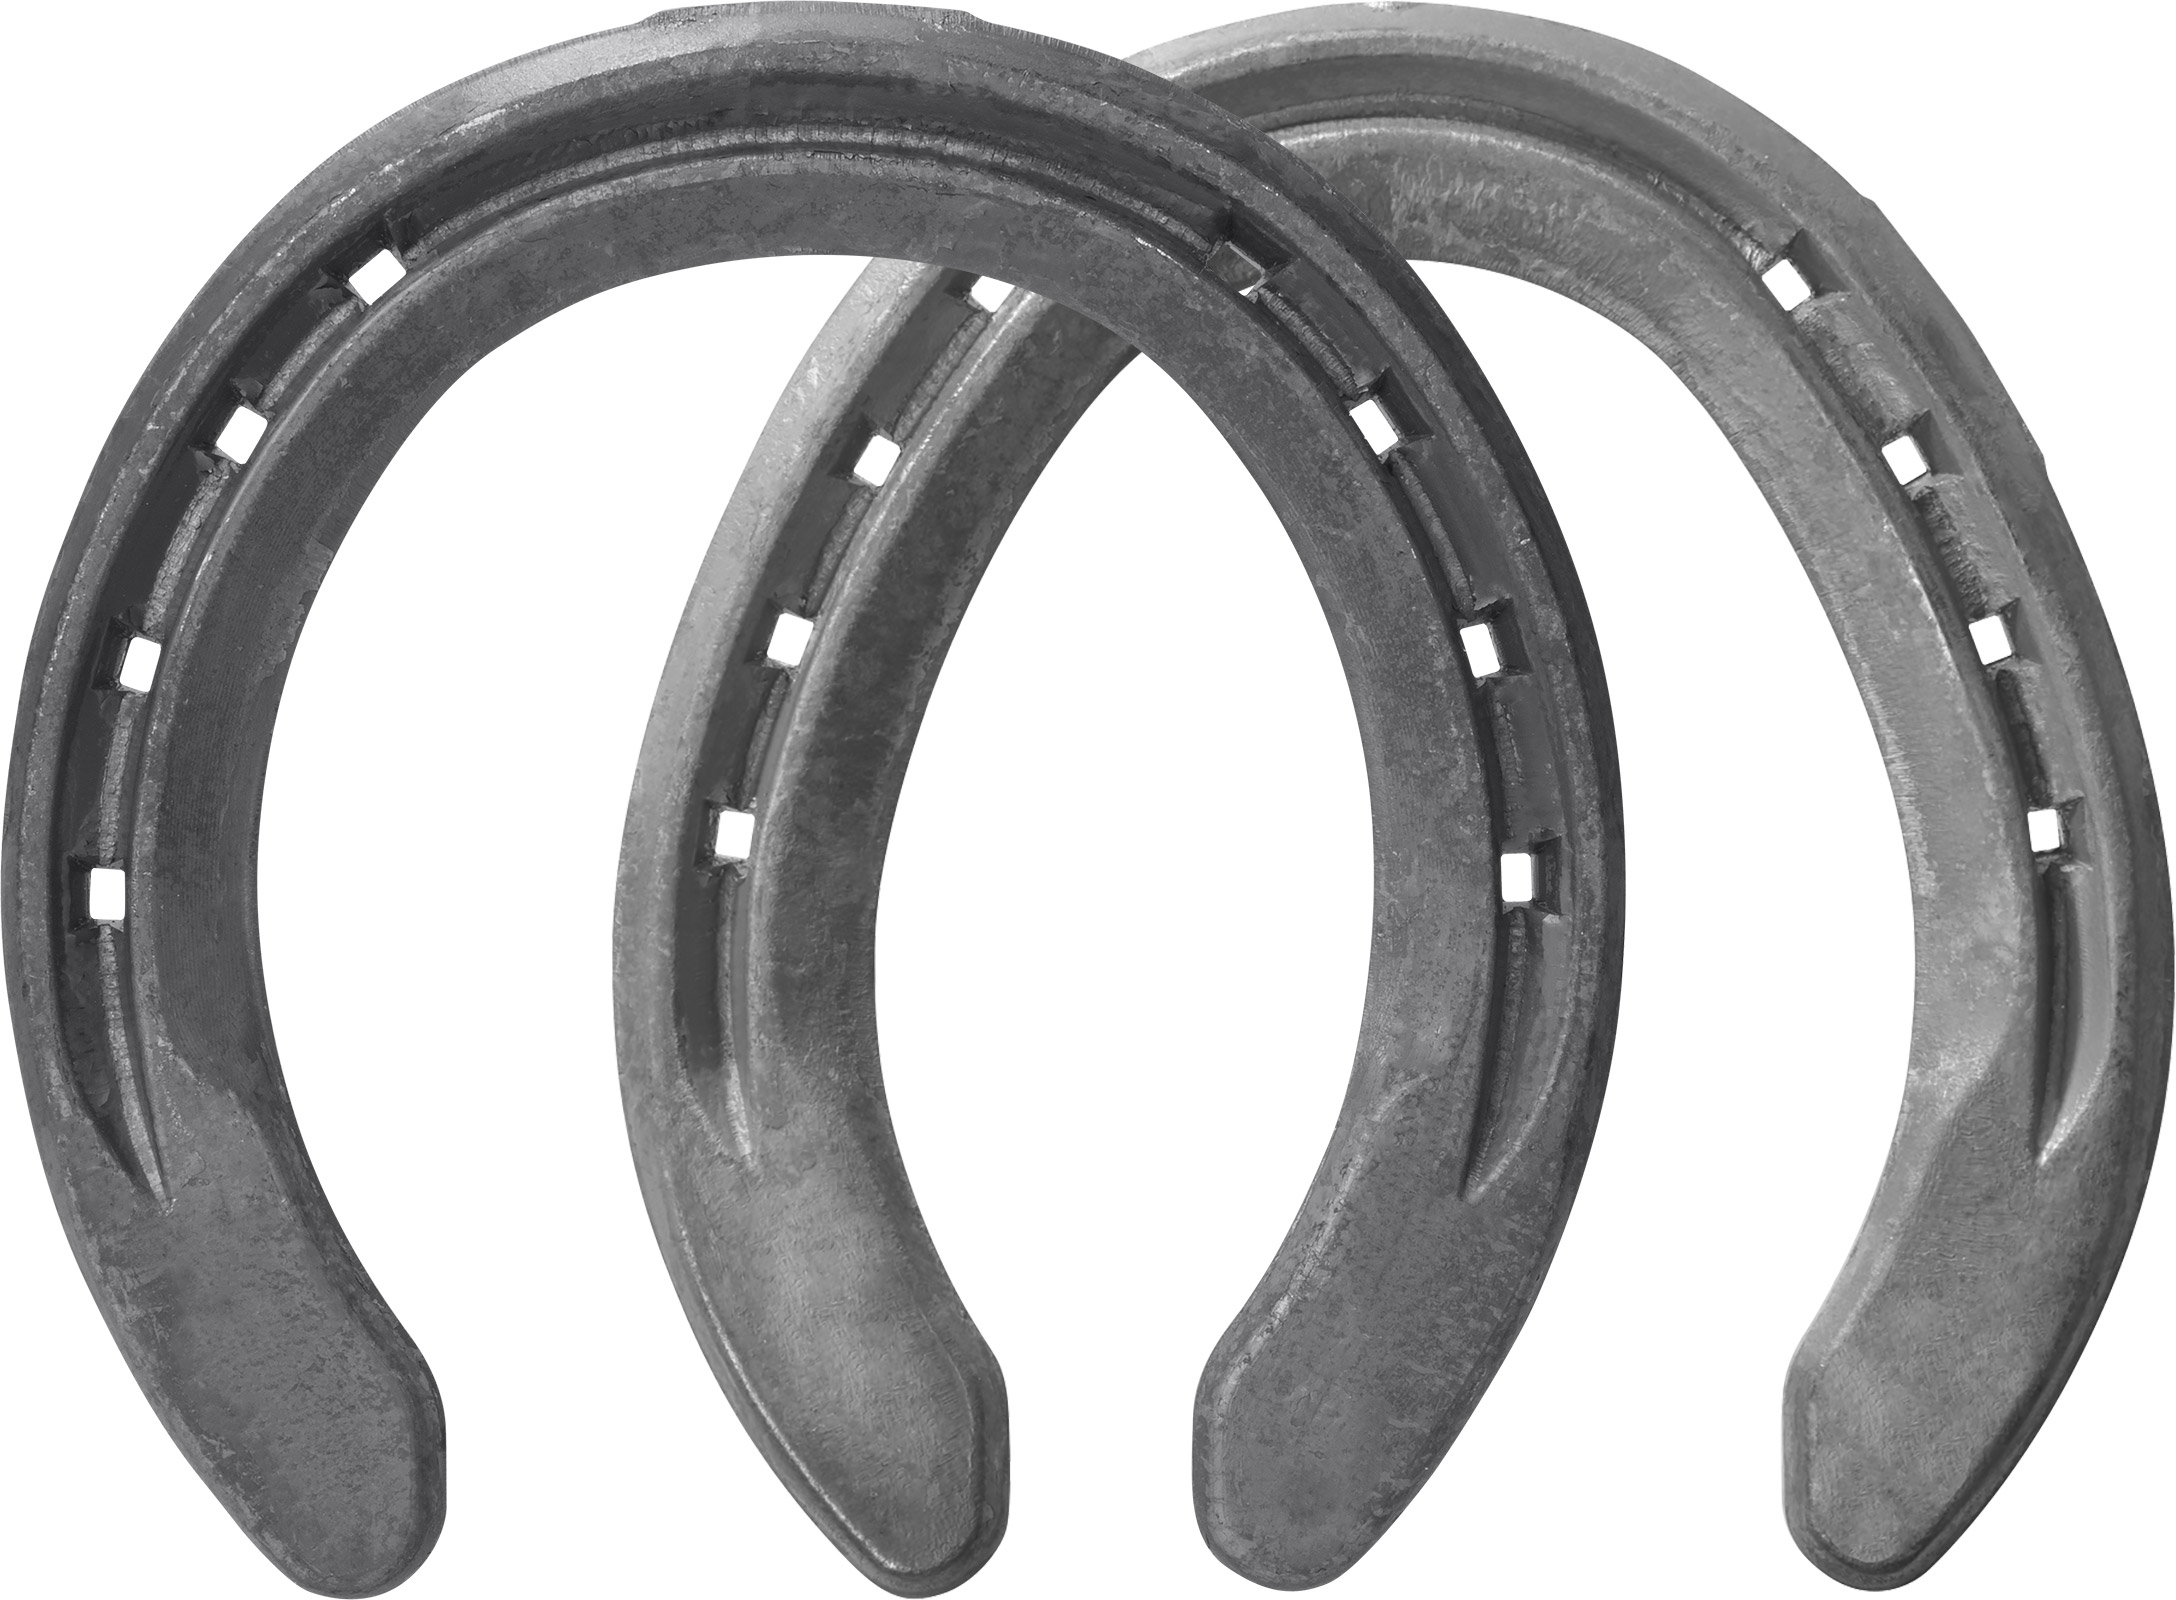 Fers à cheval St. Croix Advantage Steel, antérieur et postérieur, côté terrain